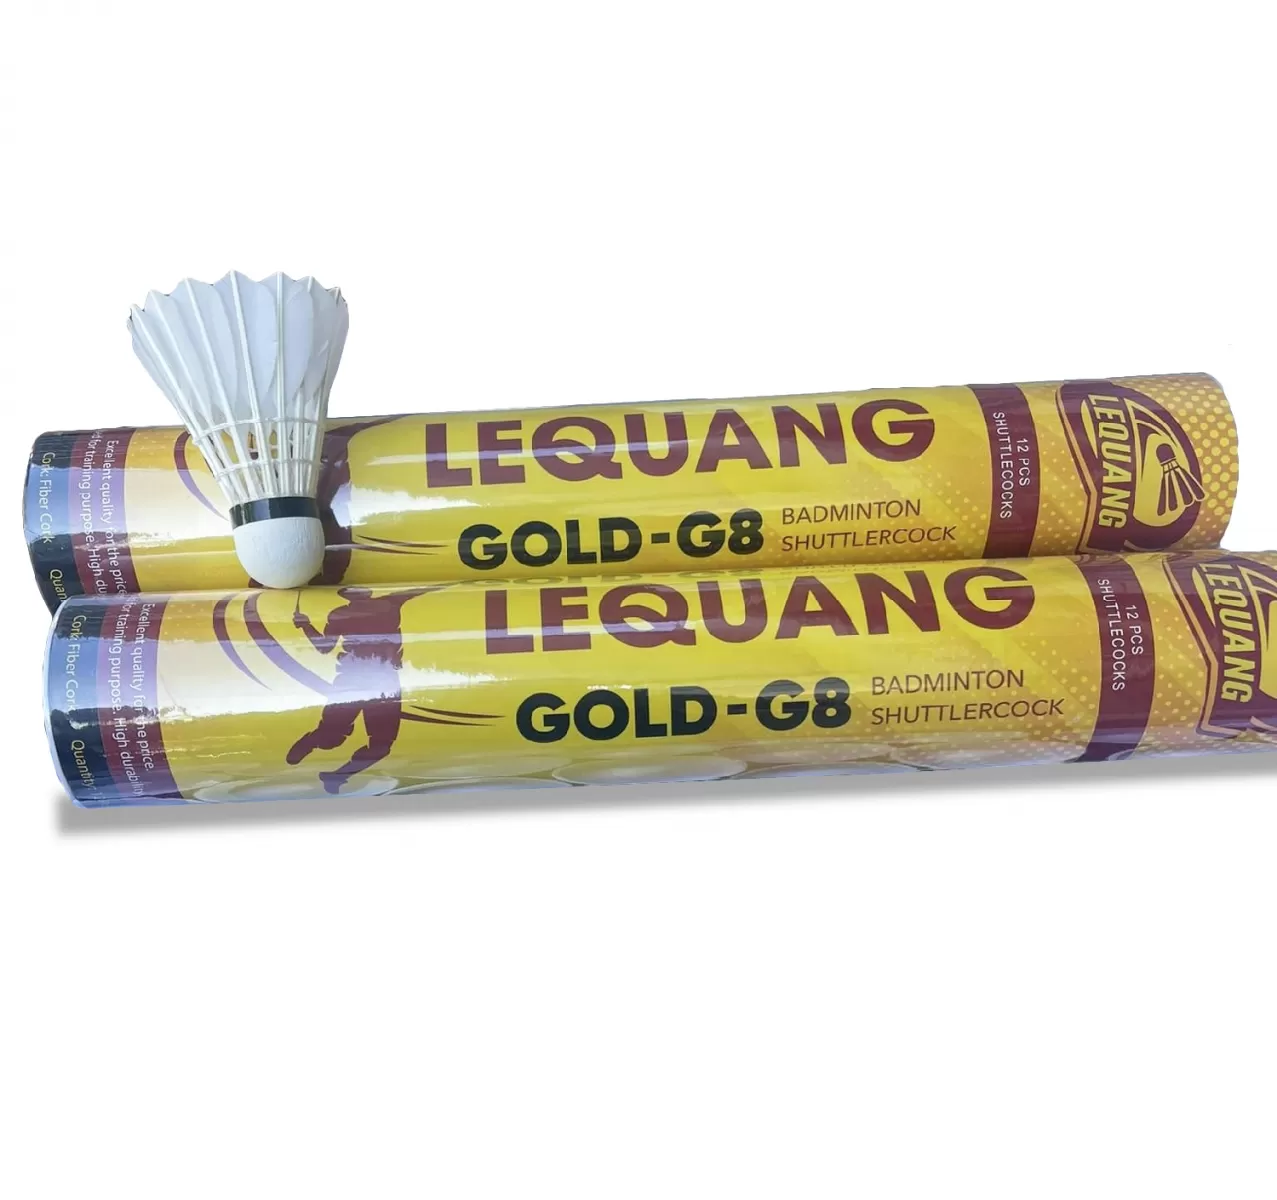 Quả cầu lông đắt nhất thế giới - Ống Cầu Lông Lê Quang (Vàng)